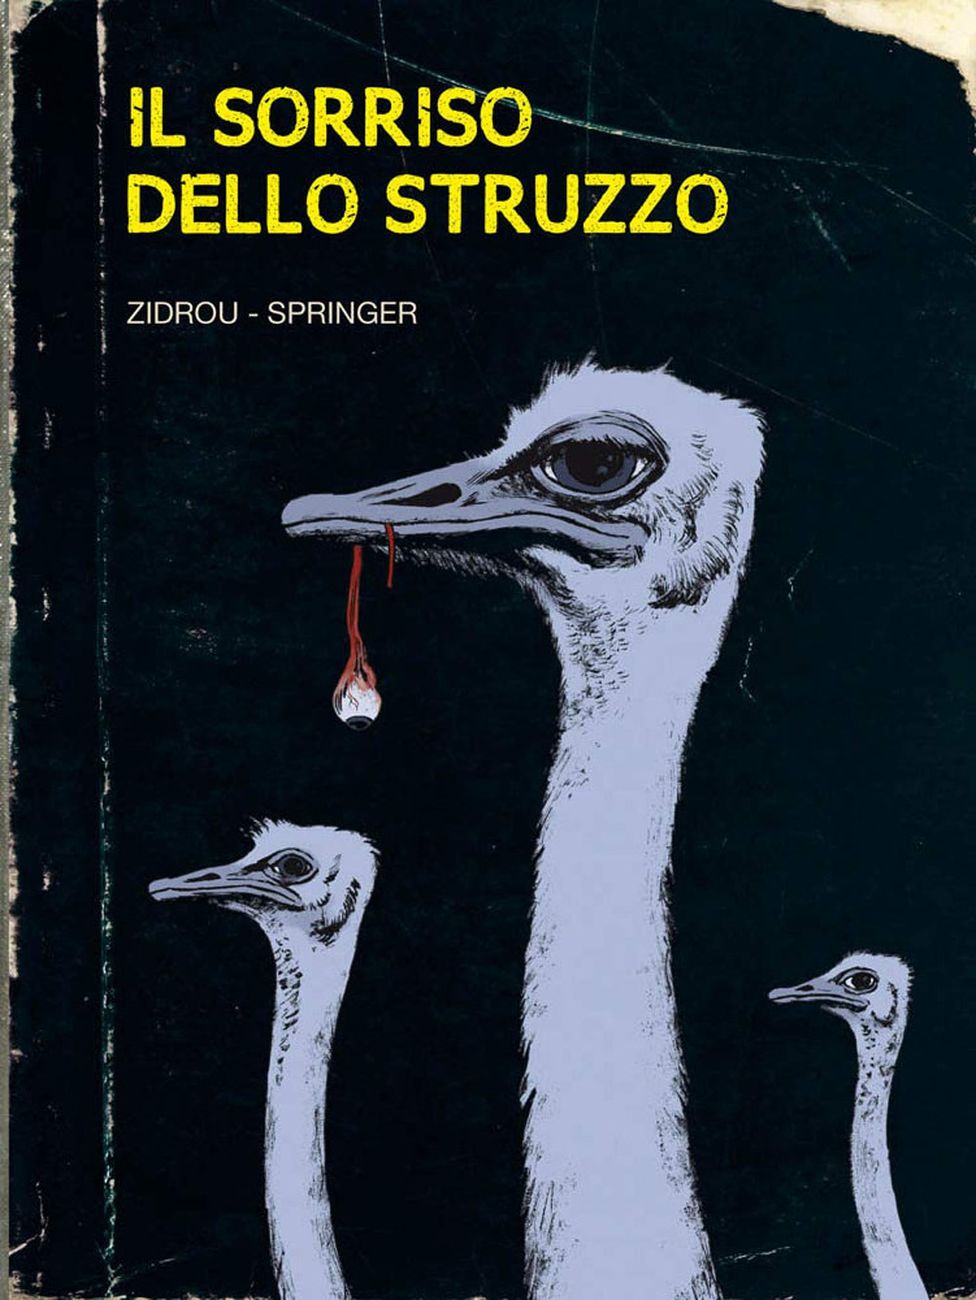 Zidrou, Springer - Il sorriso dello struzzo (Panini Comics, 2019)